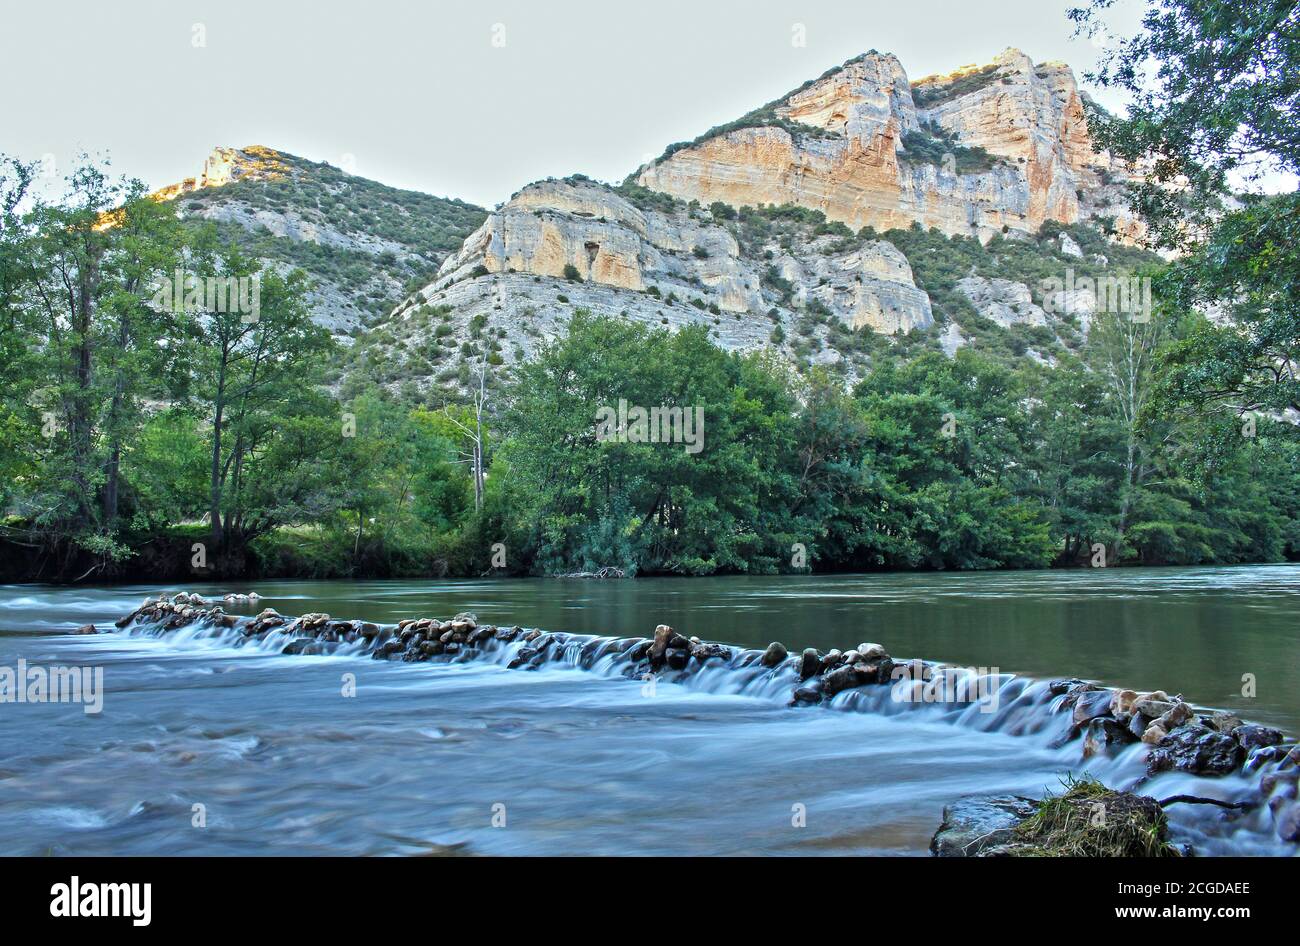 Río Ebro - Pesquera de Ebro Stock Photo